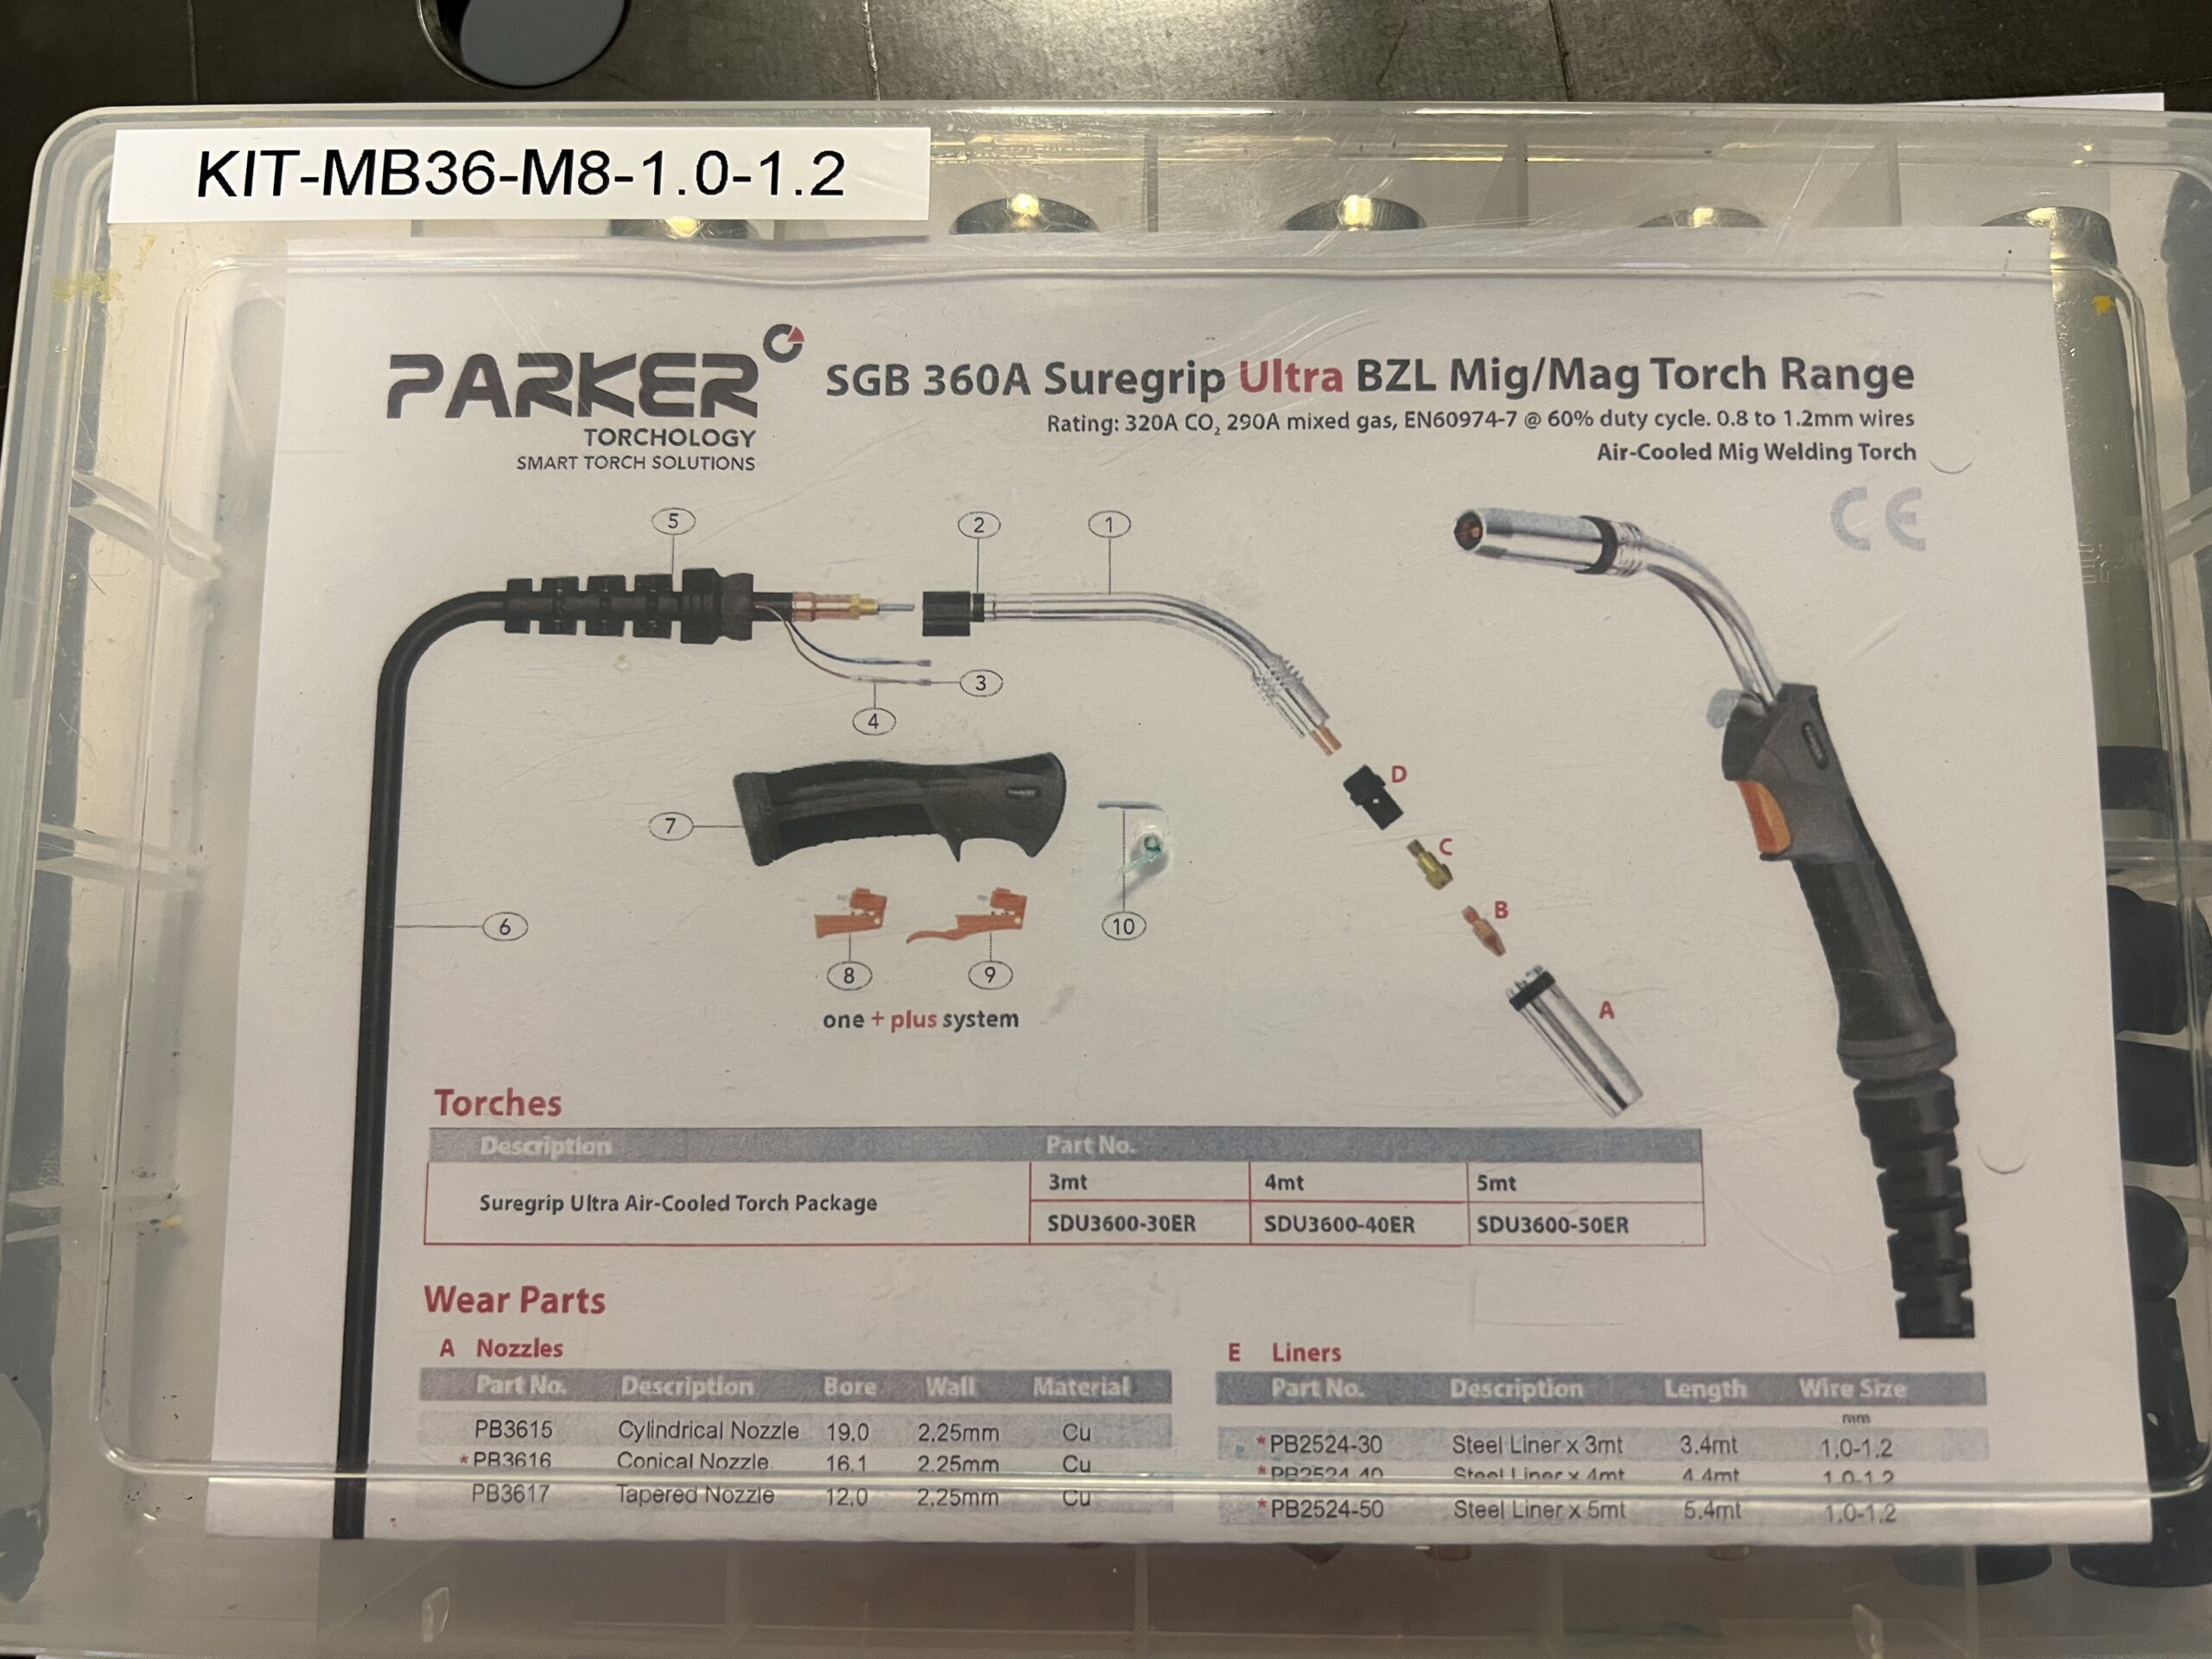 Instruktionsblad för Parker Technologys MIG Slitdelskit 360 A med M8 k-rör 1,0/1,2 Parker, som visar brännardelar, monteringsanvisningar och artikelnummer.